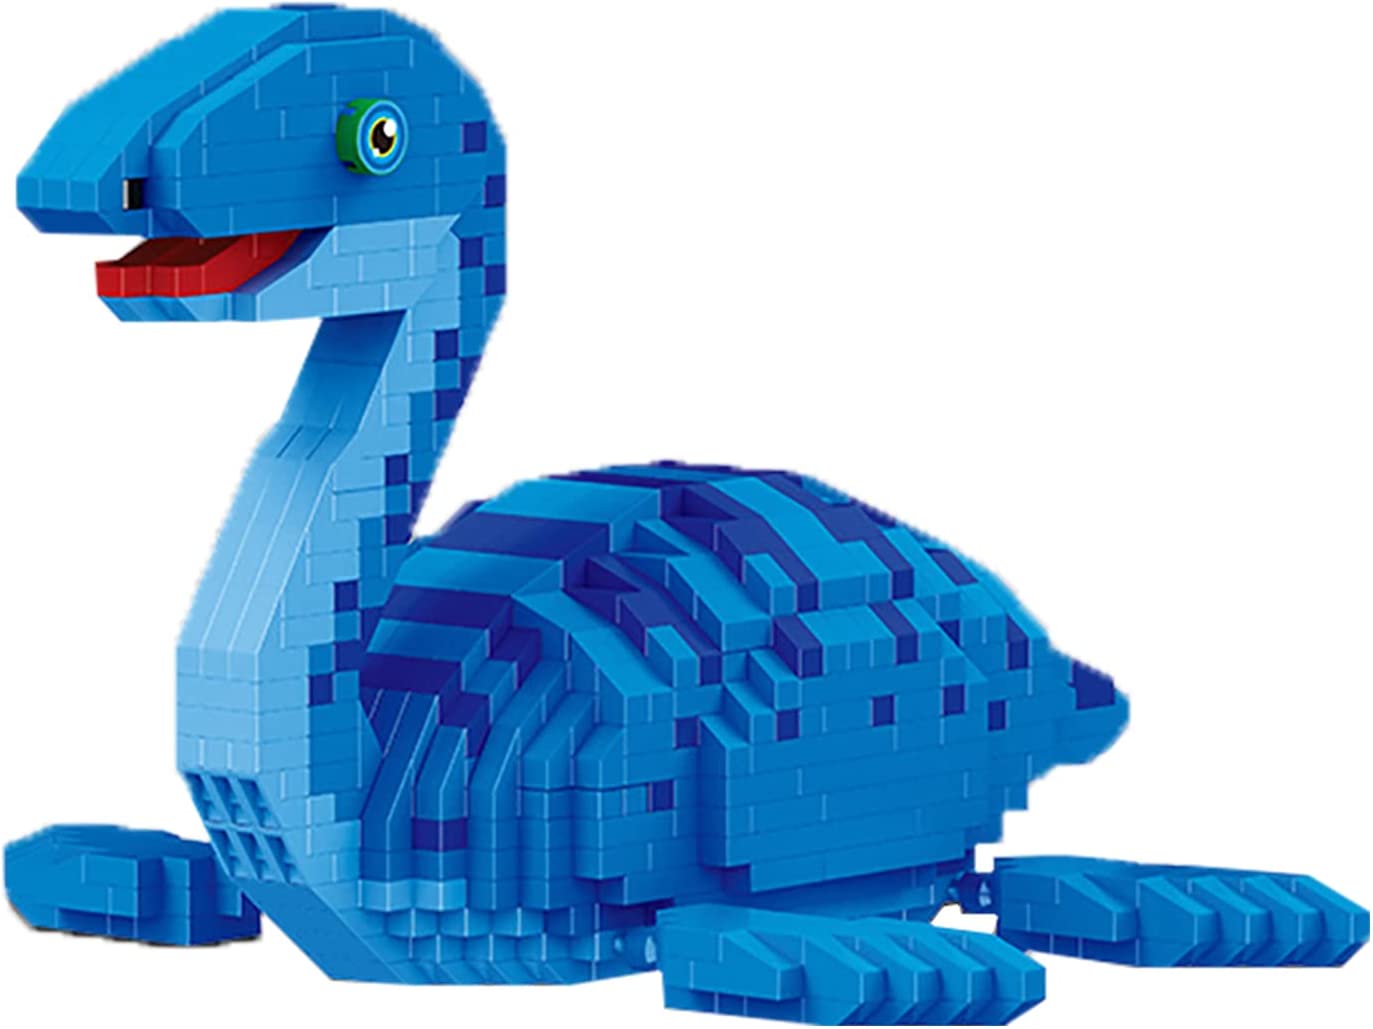 Конструктор Balody 3D из миниблоков Динозавр Плезиозавр, 1004 элементов BA18403 конструктор 3d из миниблоков balody храм василия блаженного 1411 элементов ba16321